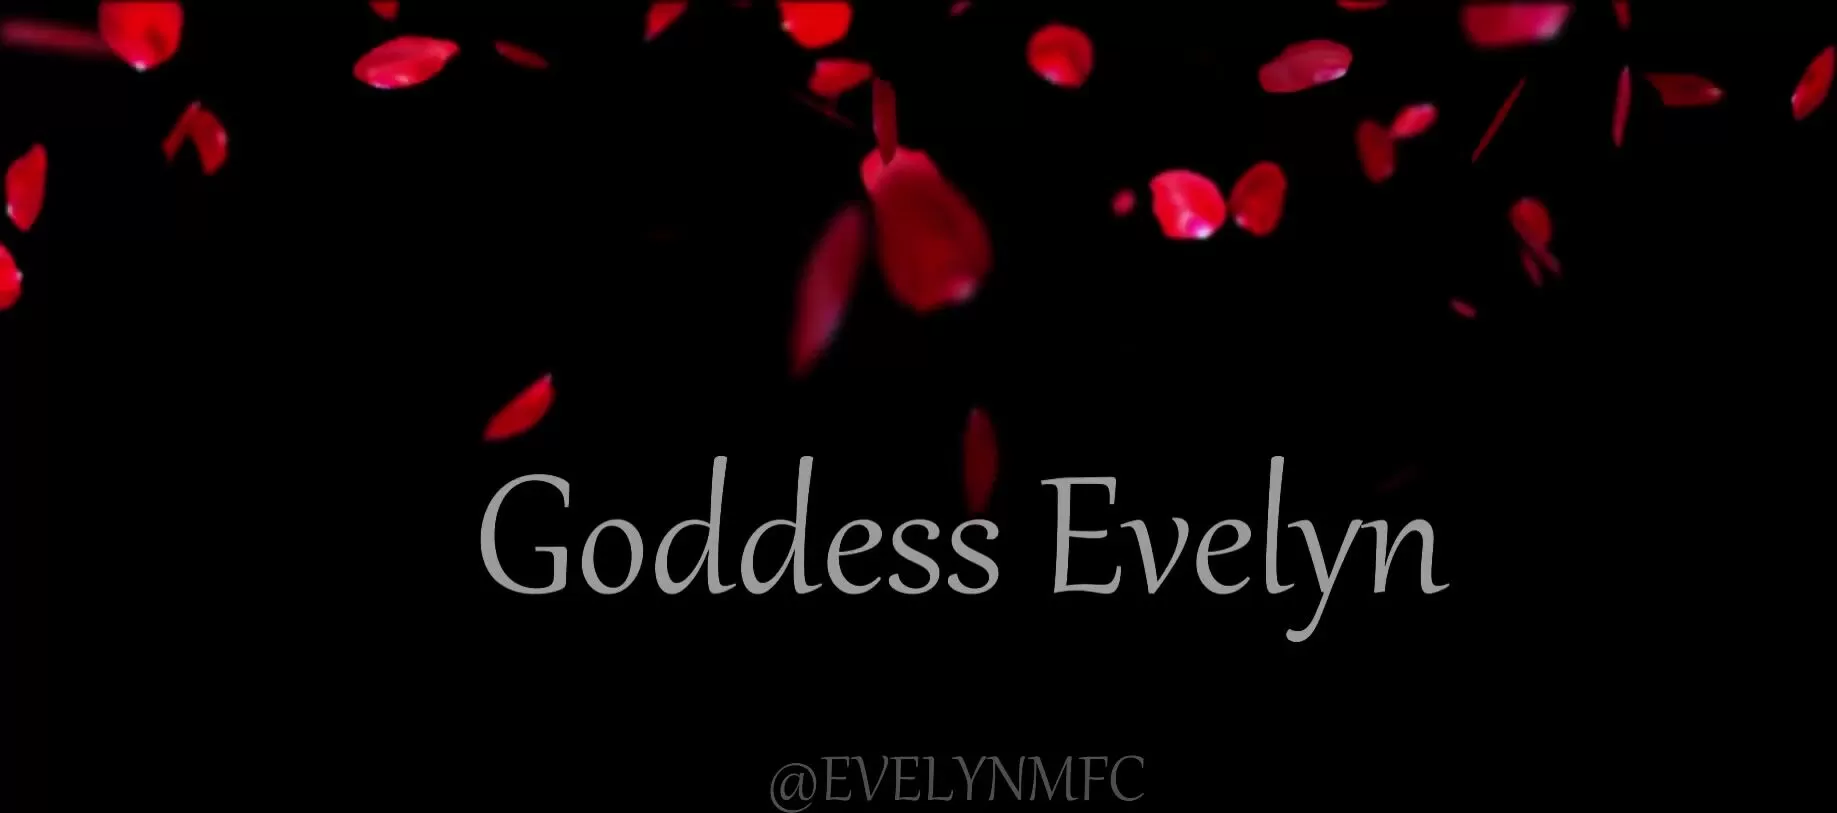 Evelyn naked goddess Watch Goddess